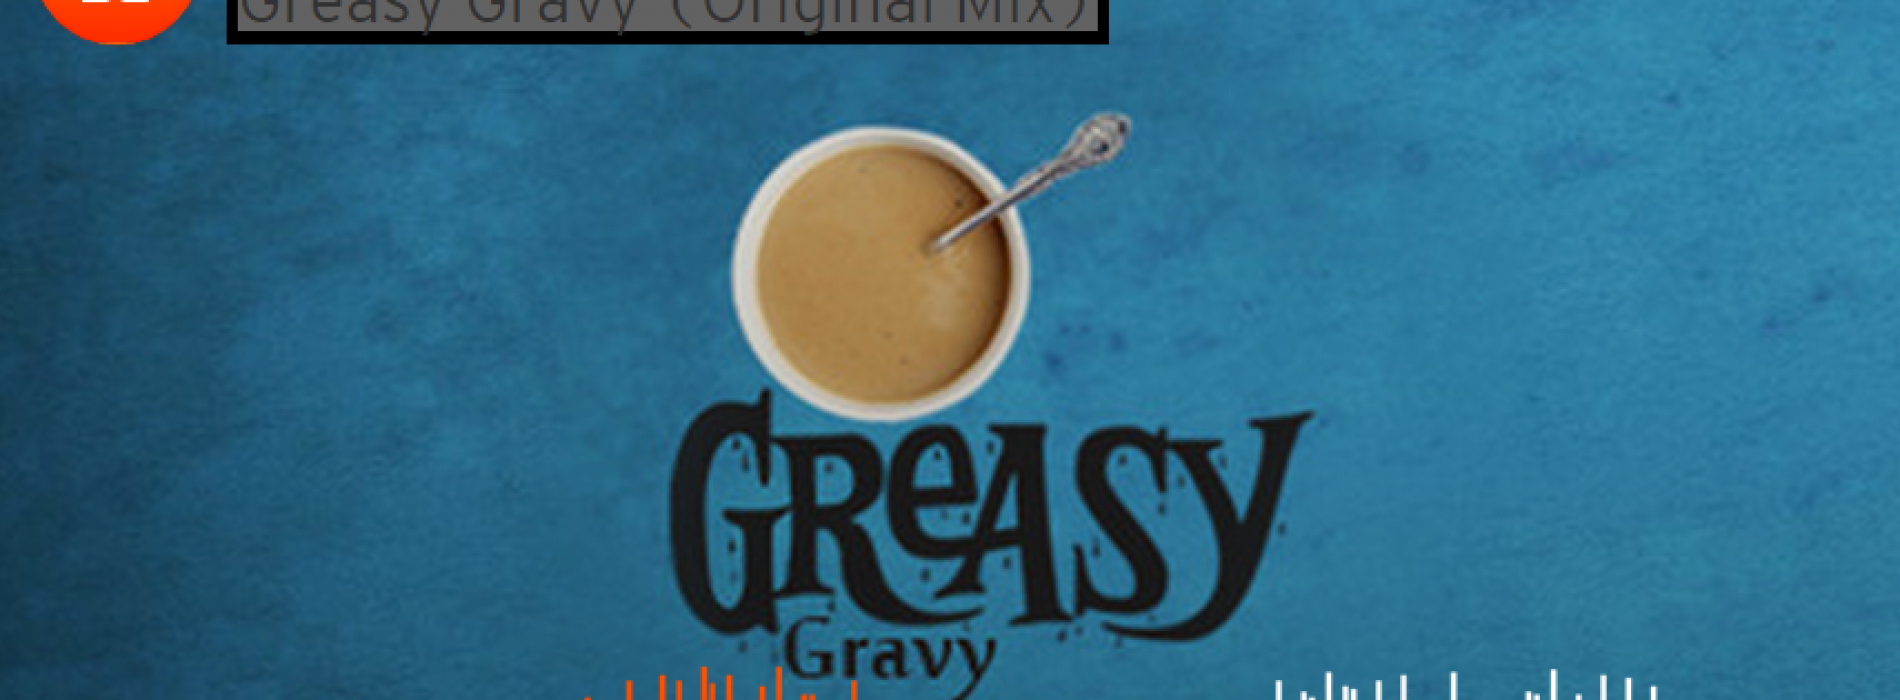 Flippy – Greasy Gravy (Original Mix)